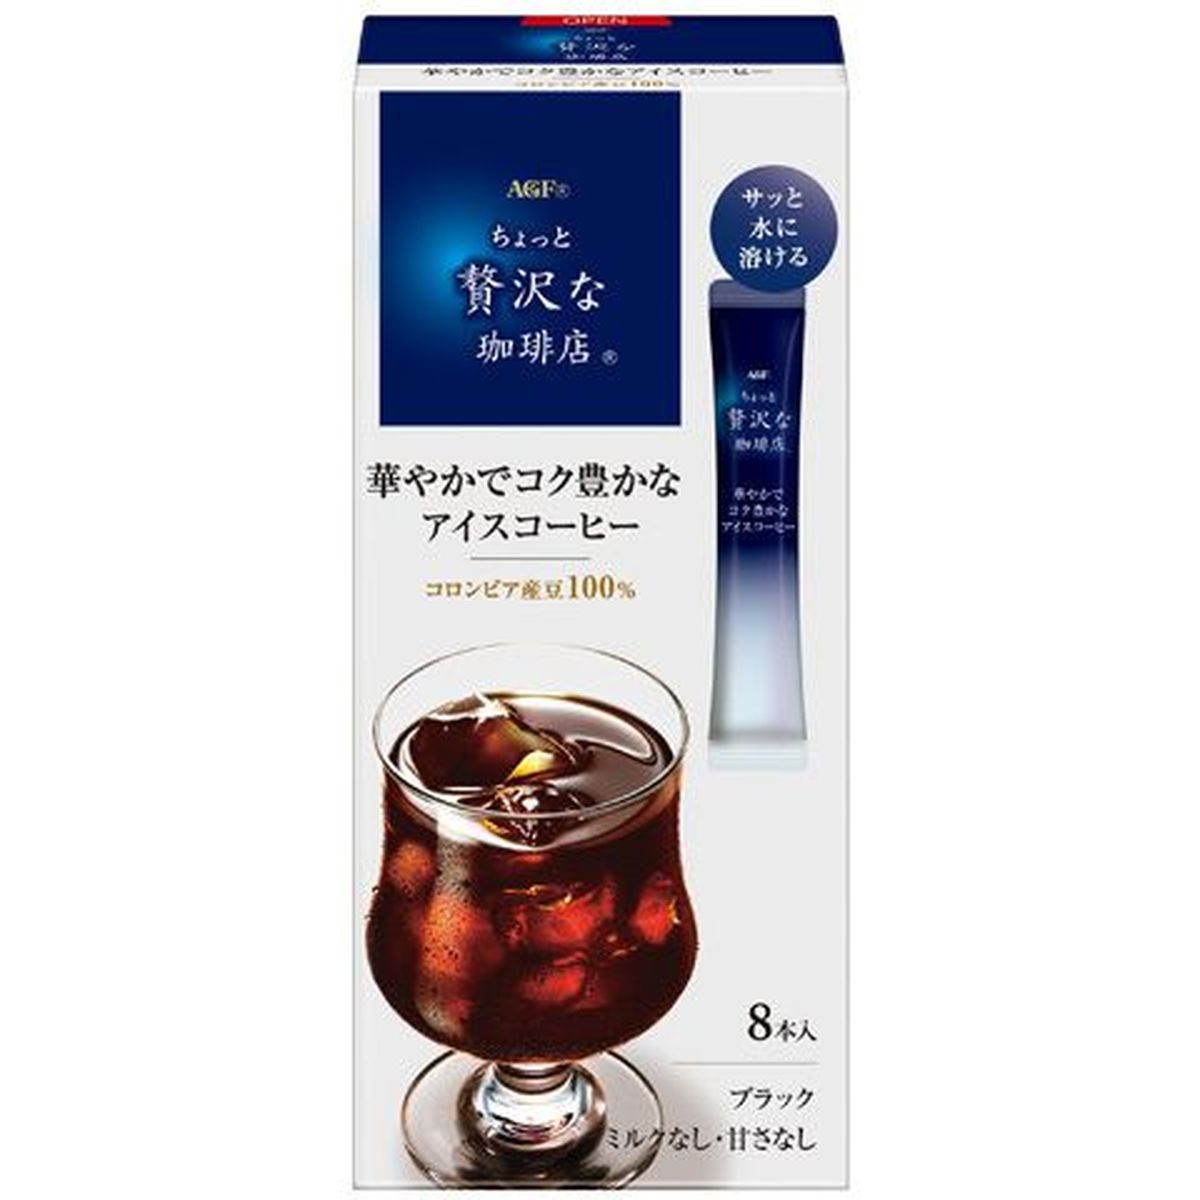 【6個入リ】AGF チョット贅沢ナ珈琲店 アイスコーヒー 8本